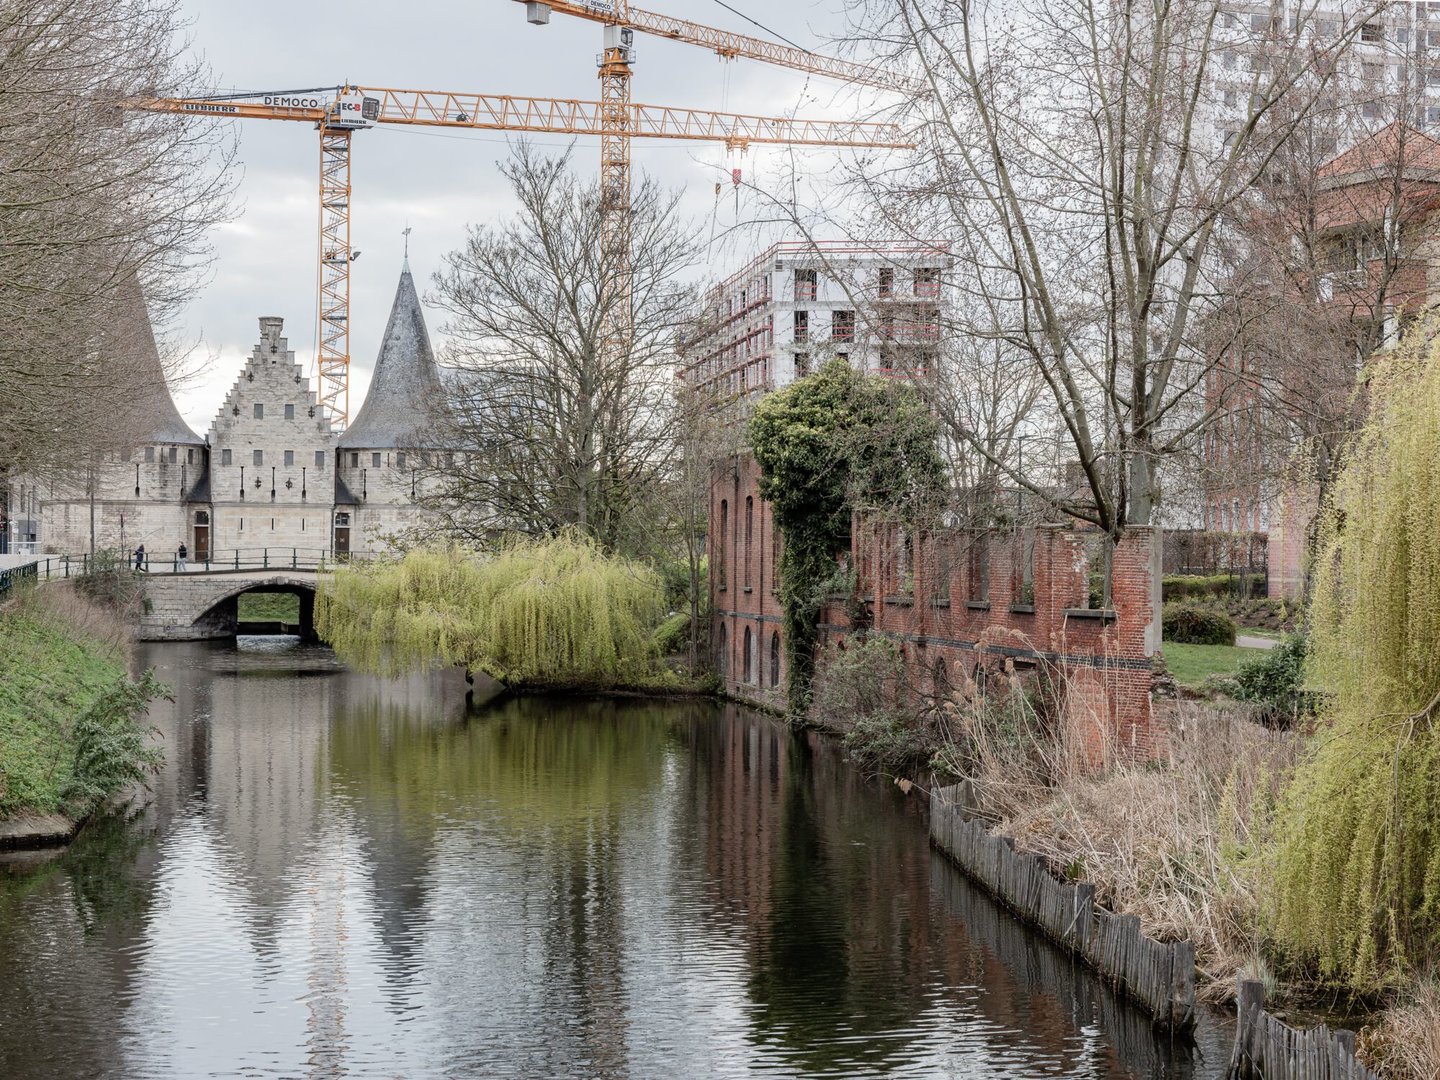 Buitenzicht met restanten voormalige textielfabriek UCO de Hemptinne in Gent